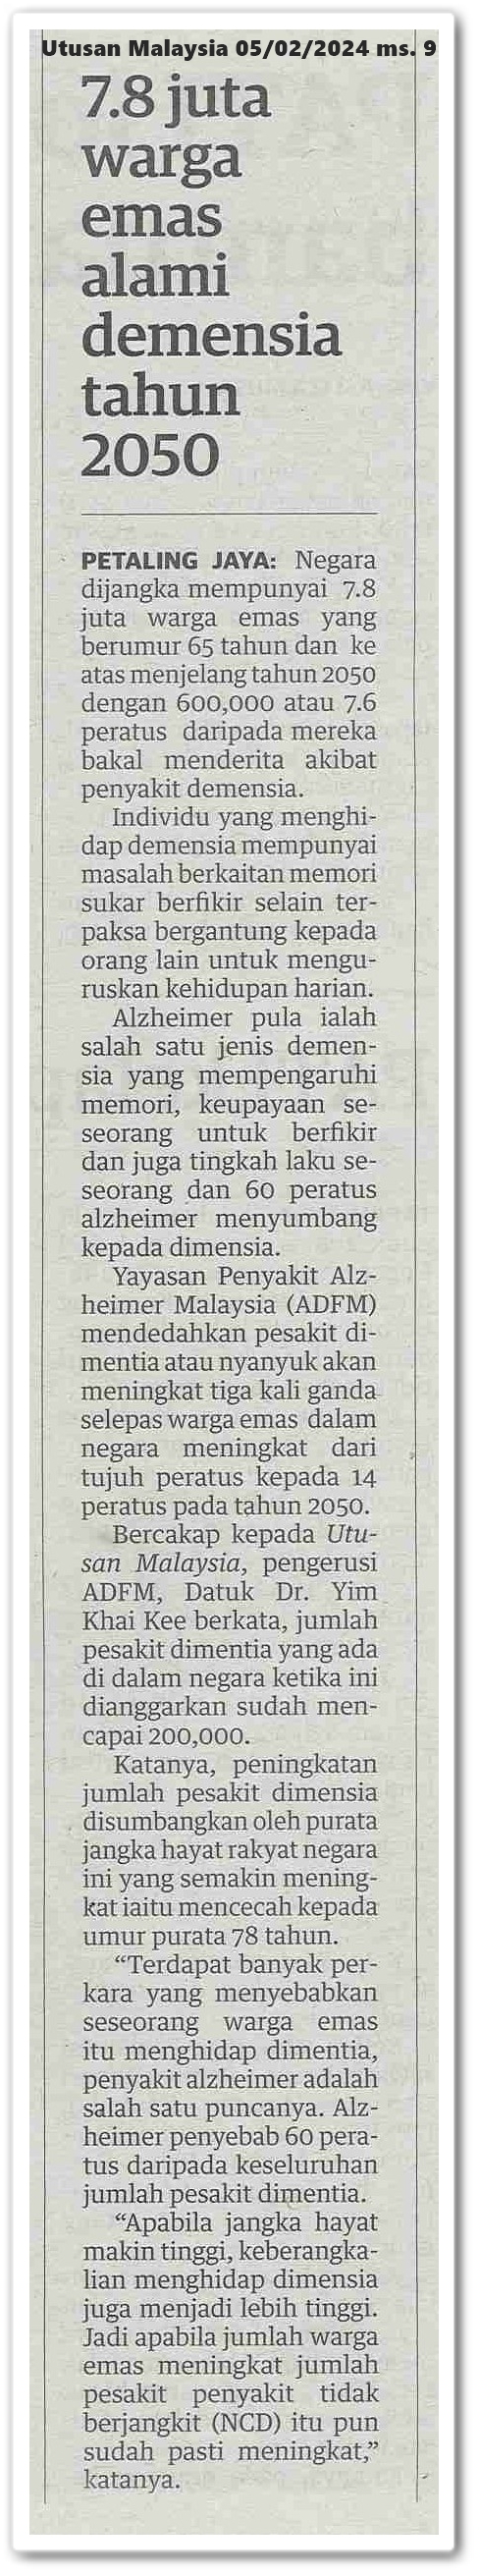 7.8 juta warga emas alami demensia tahun 2050 | Keratan akhbar Utusan Malaysia 5 Februari 2024